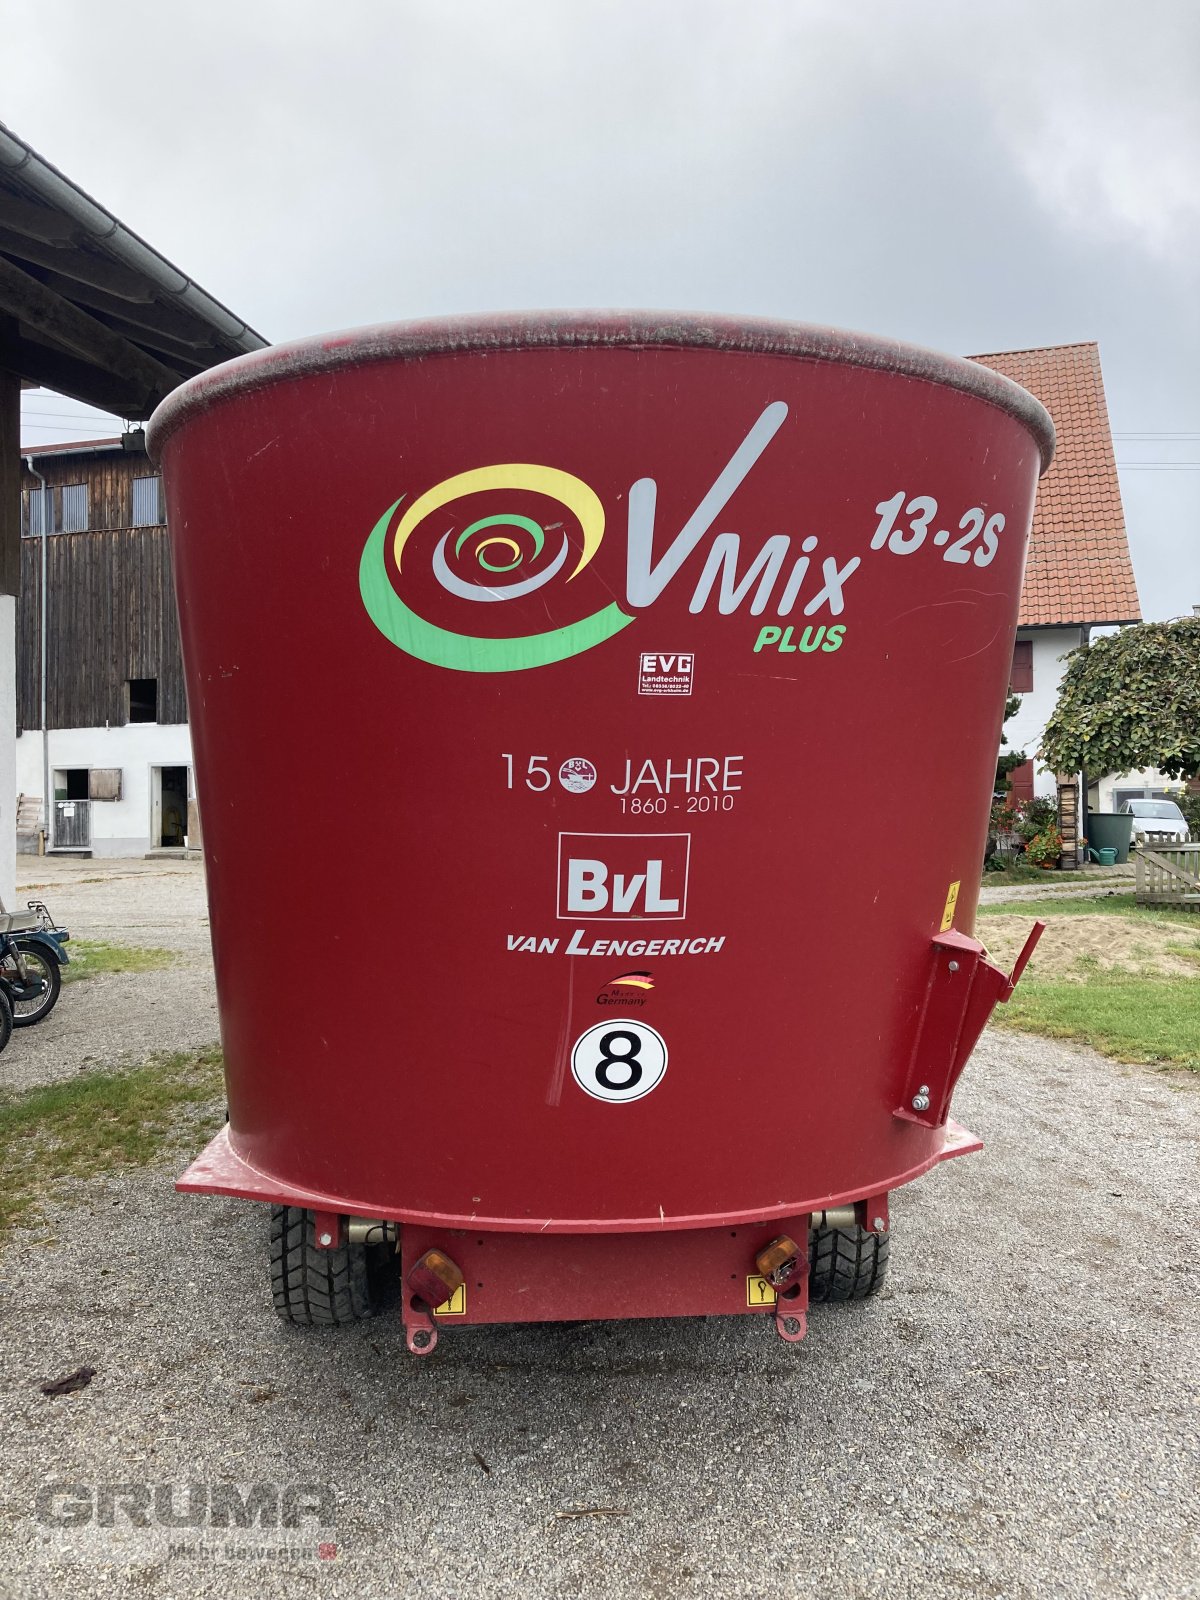 Futtermischwagen типа BVL V-Mix 13-2S, Gebrauchtmaschine в Egg a.d. Günz (Фотография 3)